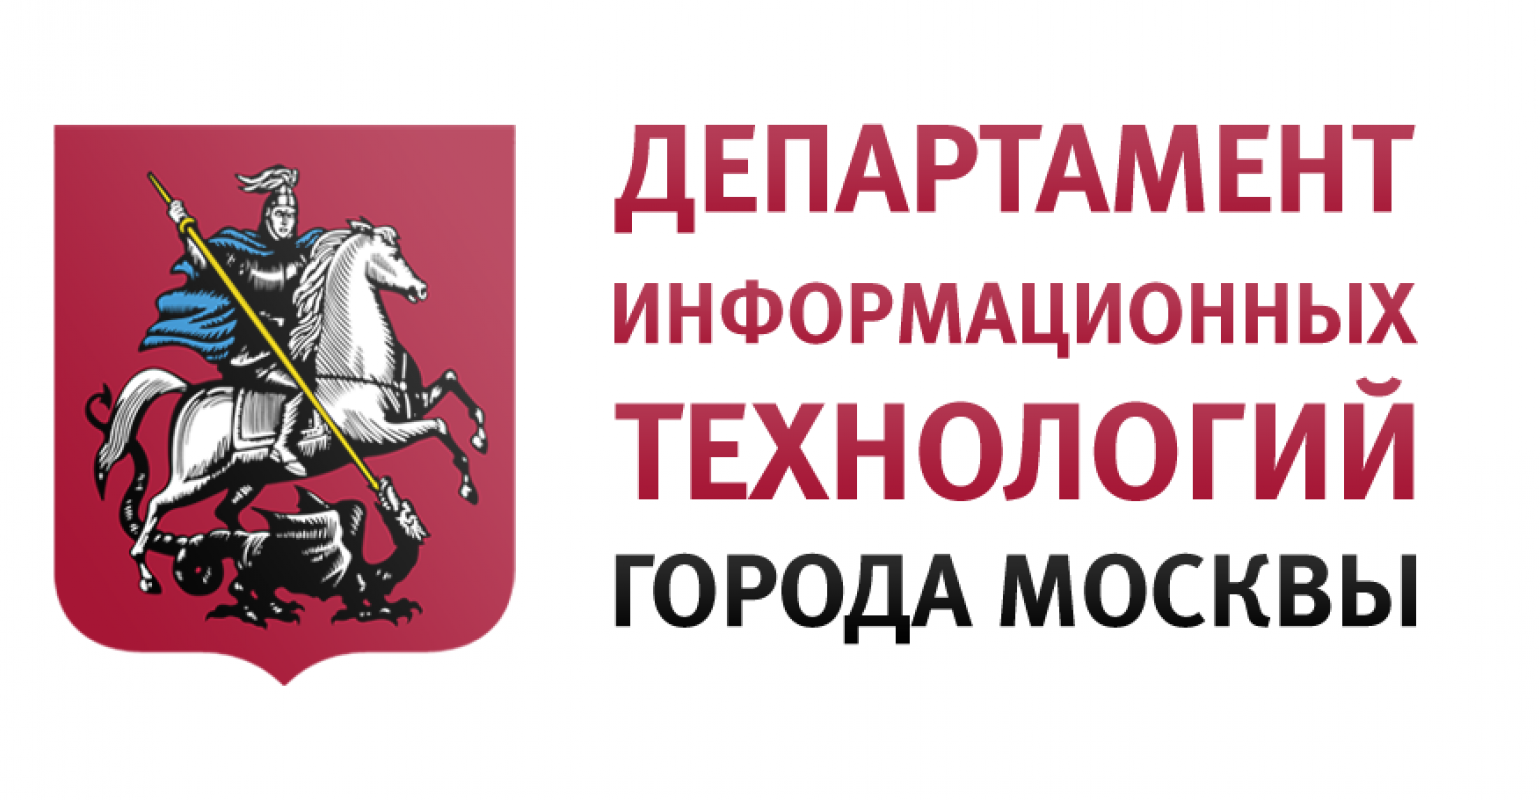 Департамент правительства г москвы